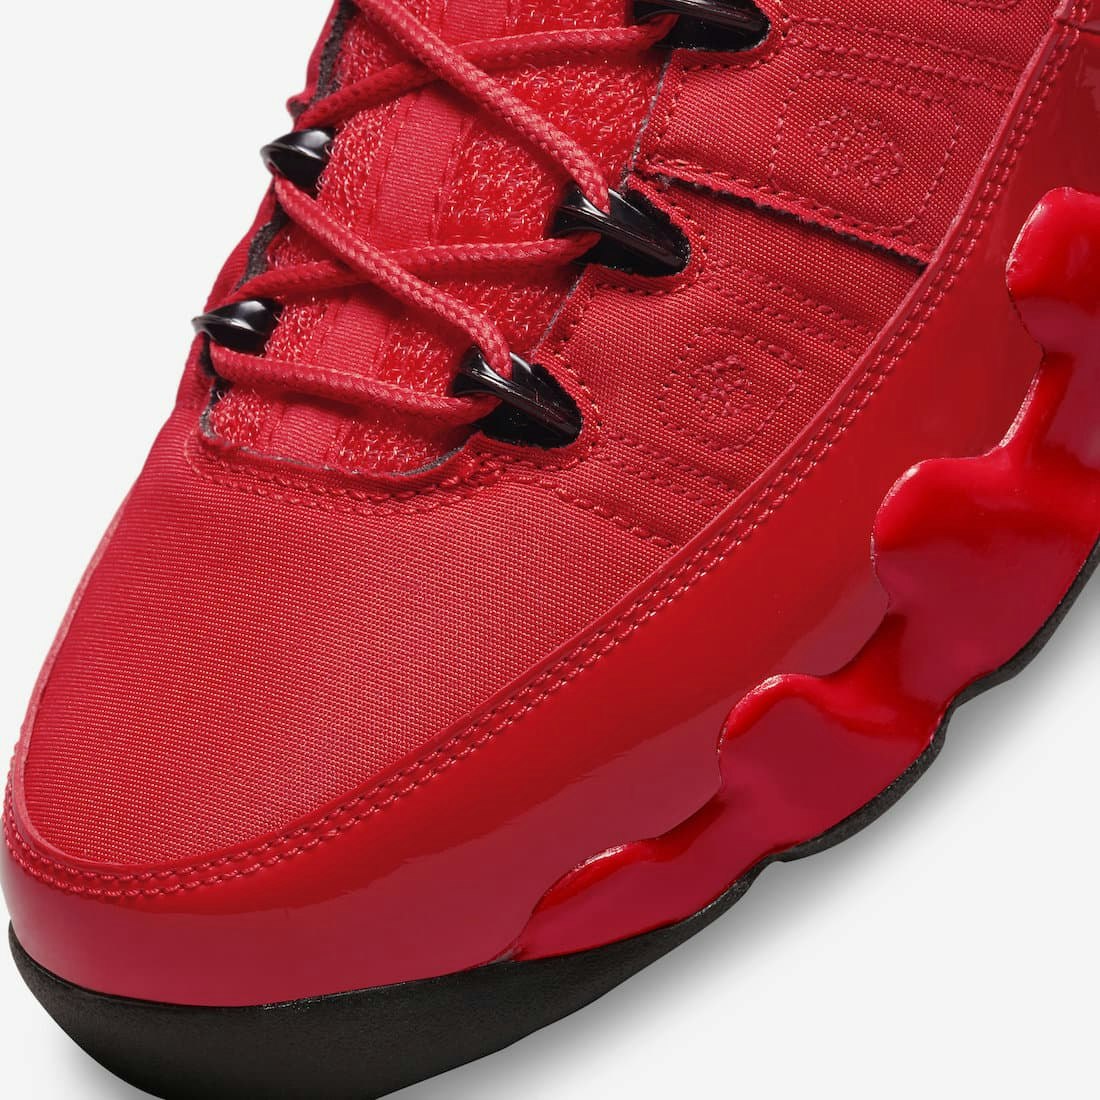 Air Jordan 9 “Chile Red”